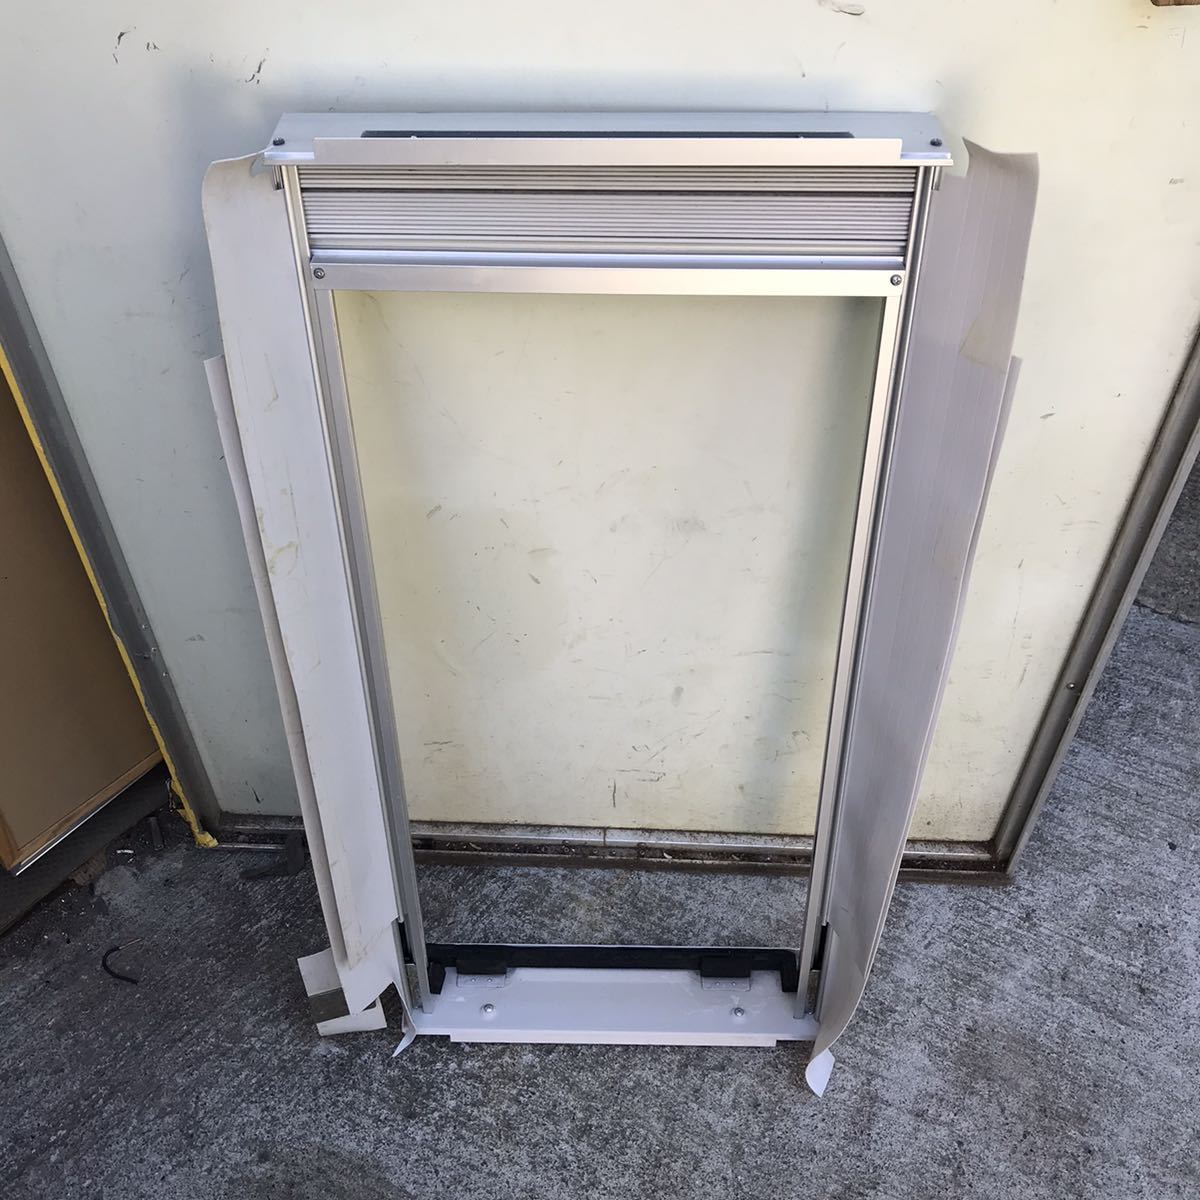 refle* электризация подтверждено KOIZUMI салон кондиционер окно форма охлаждение специальный KAW-1692 2019 год производства с дистанционным пультом на месте самовывоз теплый прием!